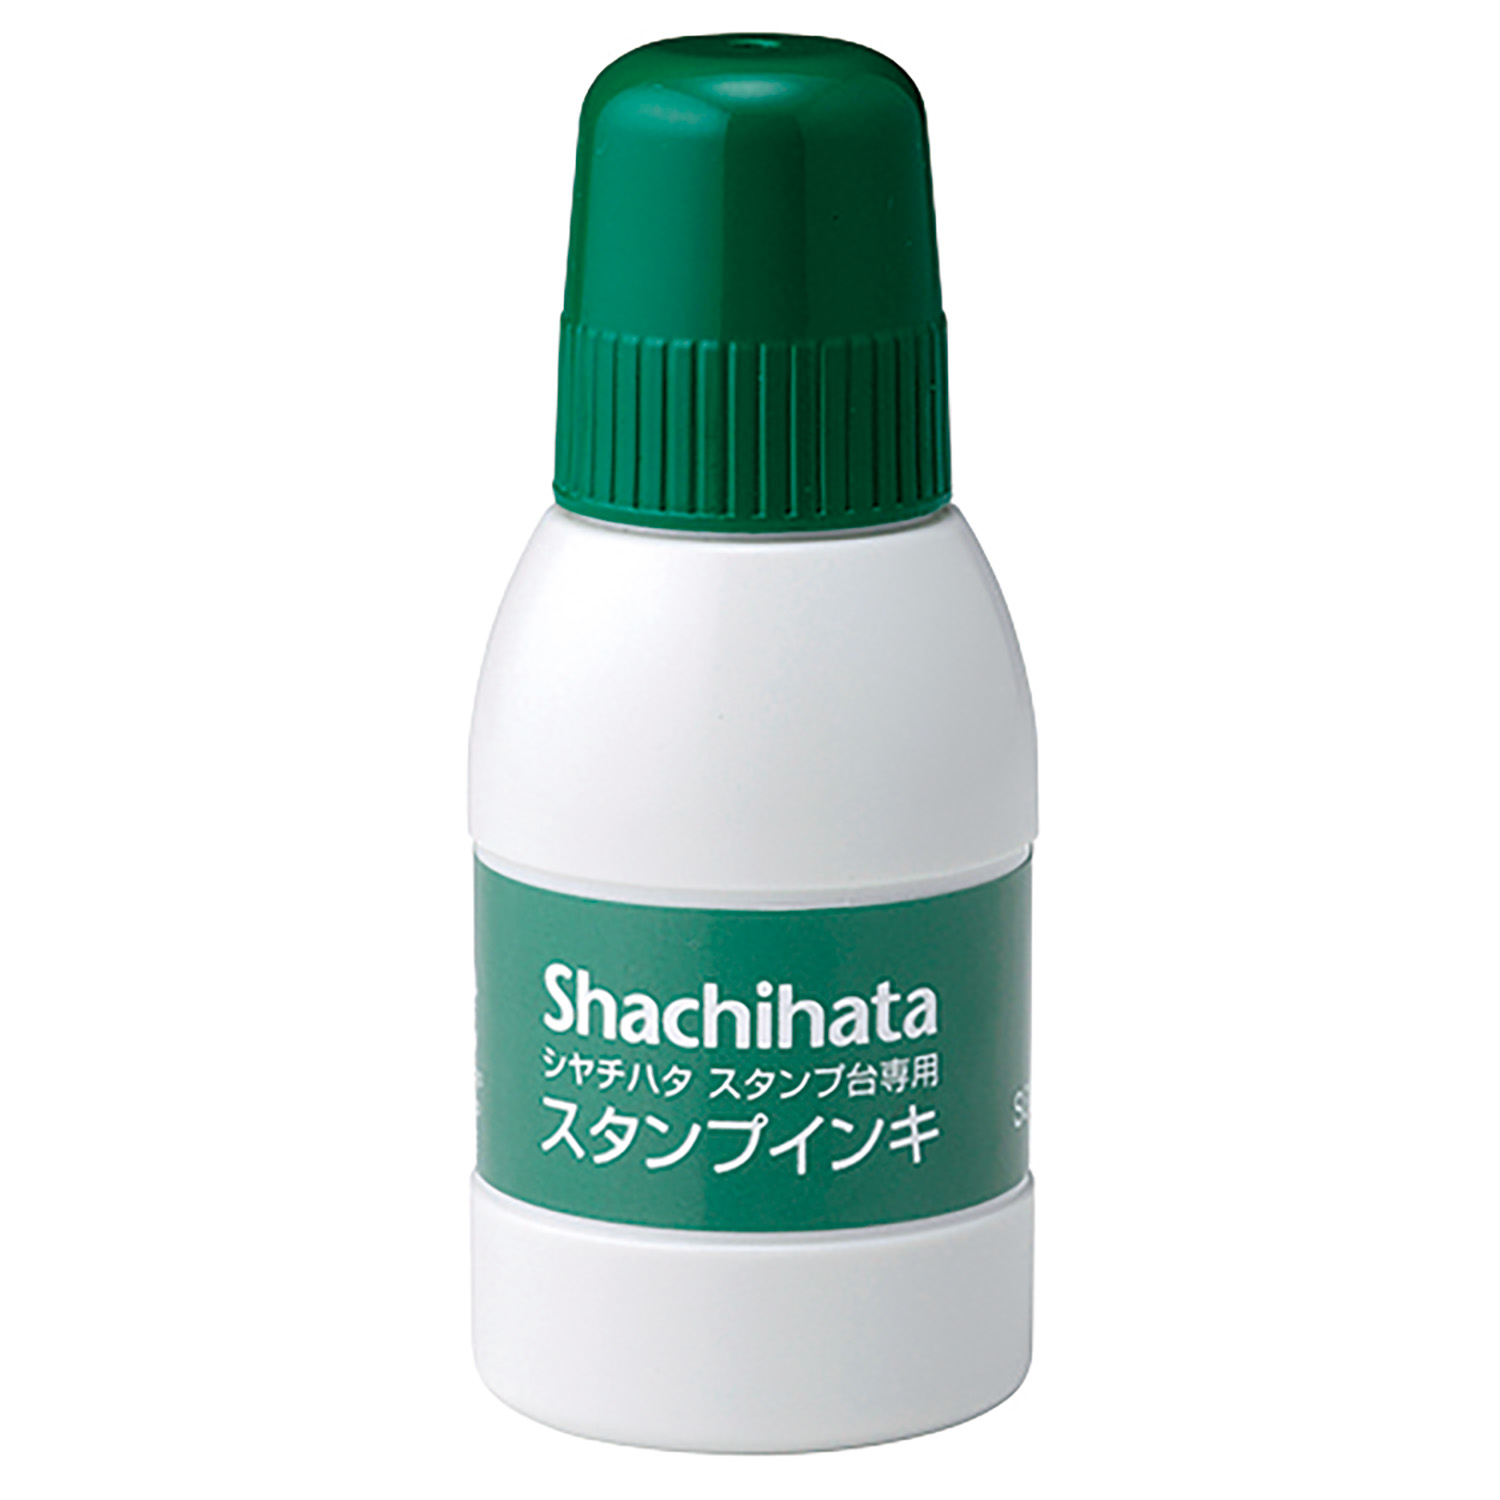 シヤチハタスタンプ台専用スタンプインキ 小瓶 緑